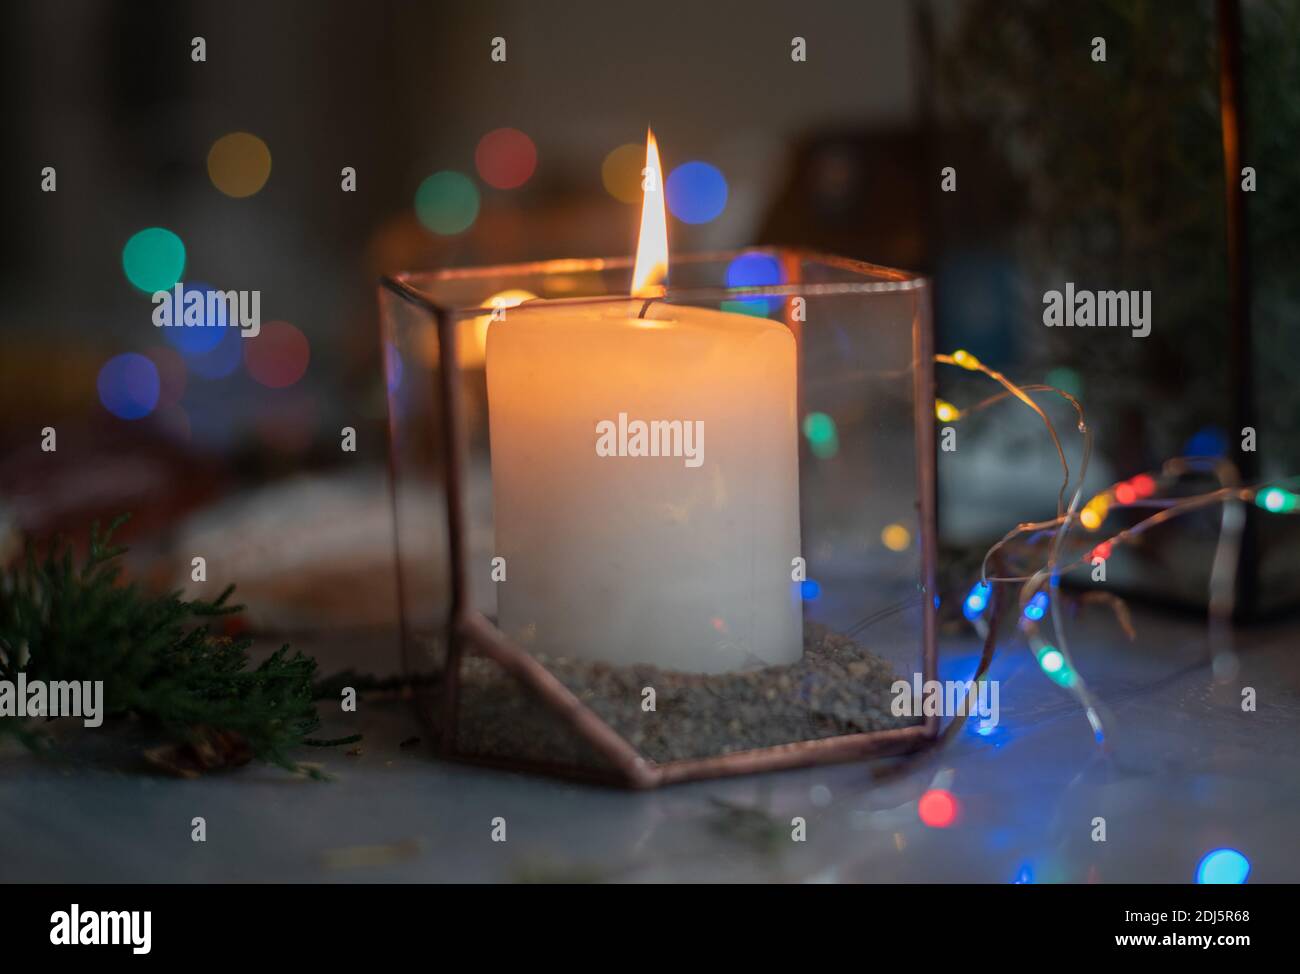 Eine brennende Kerze in einem Glashalter in einer stimmungsvollen gemütlichen Atmosphäre zu Hause in der Nacht durch das Licht einer Girlande. Urlaub, Weihnachten und Neujahr Stockfoto